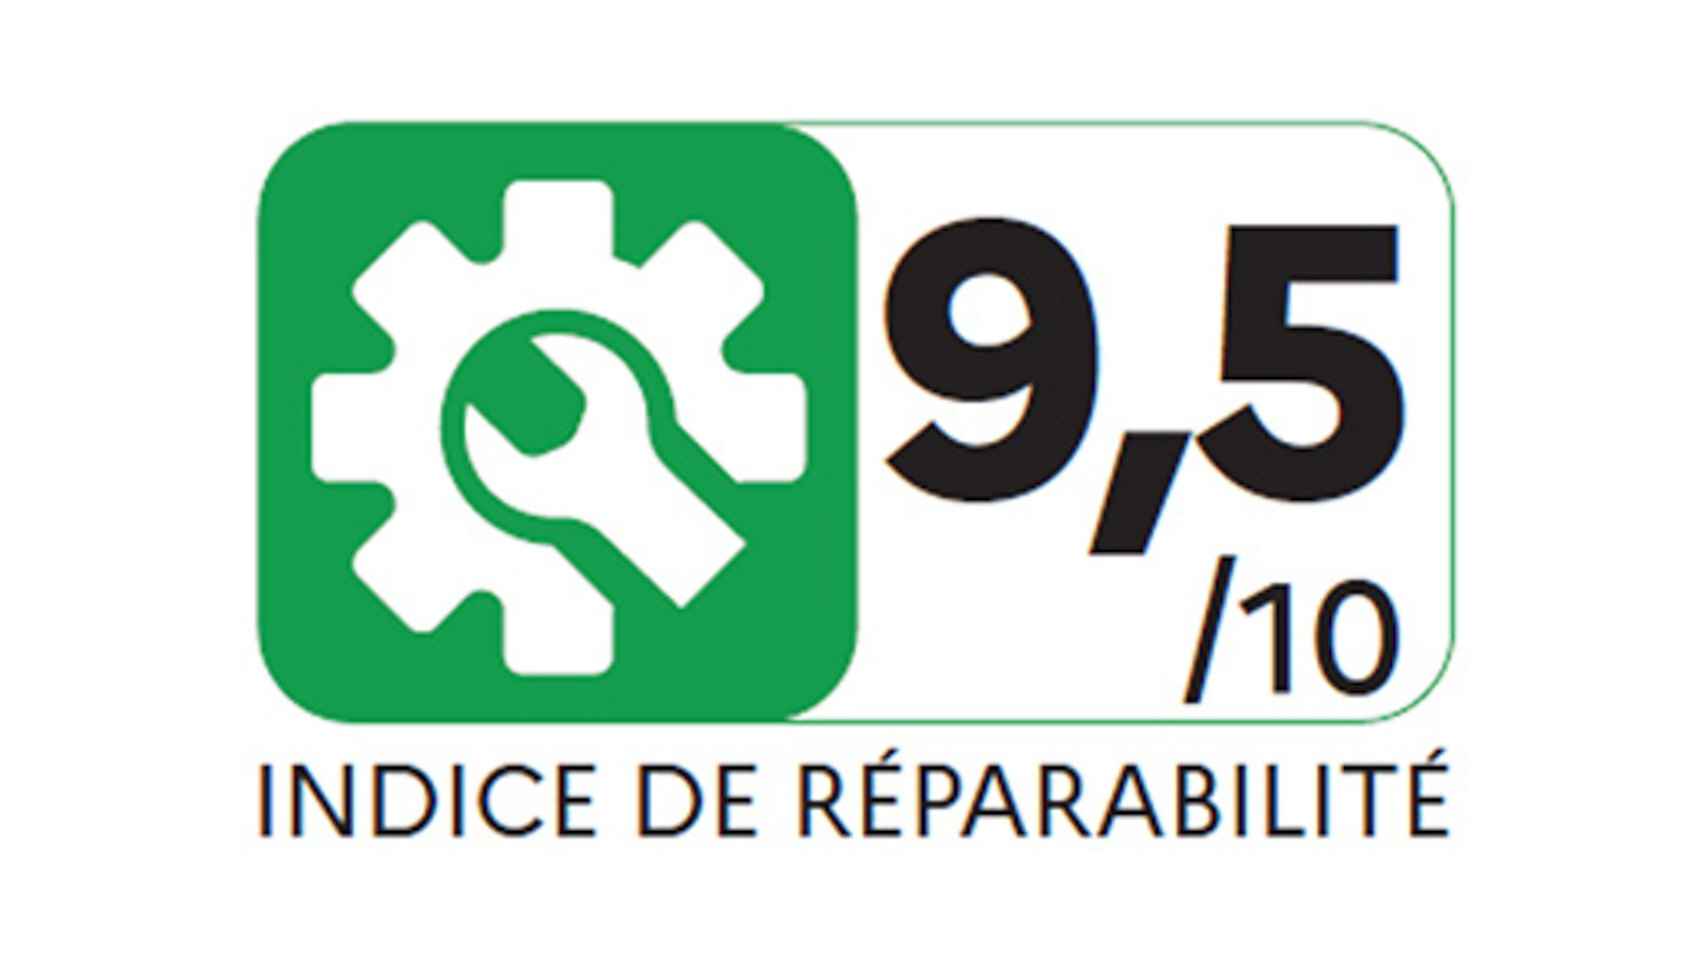 El nuevo índide de reparabilidad que ya se usa en Francia